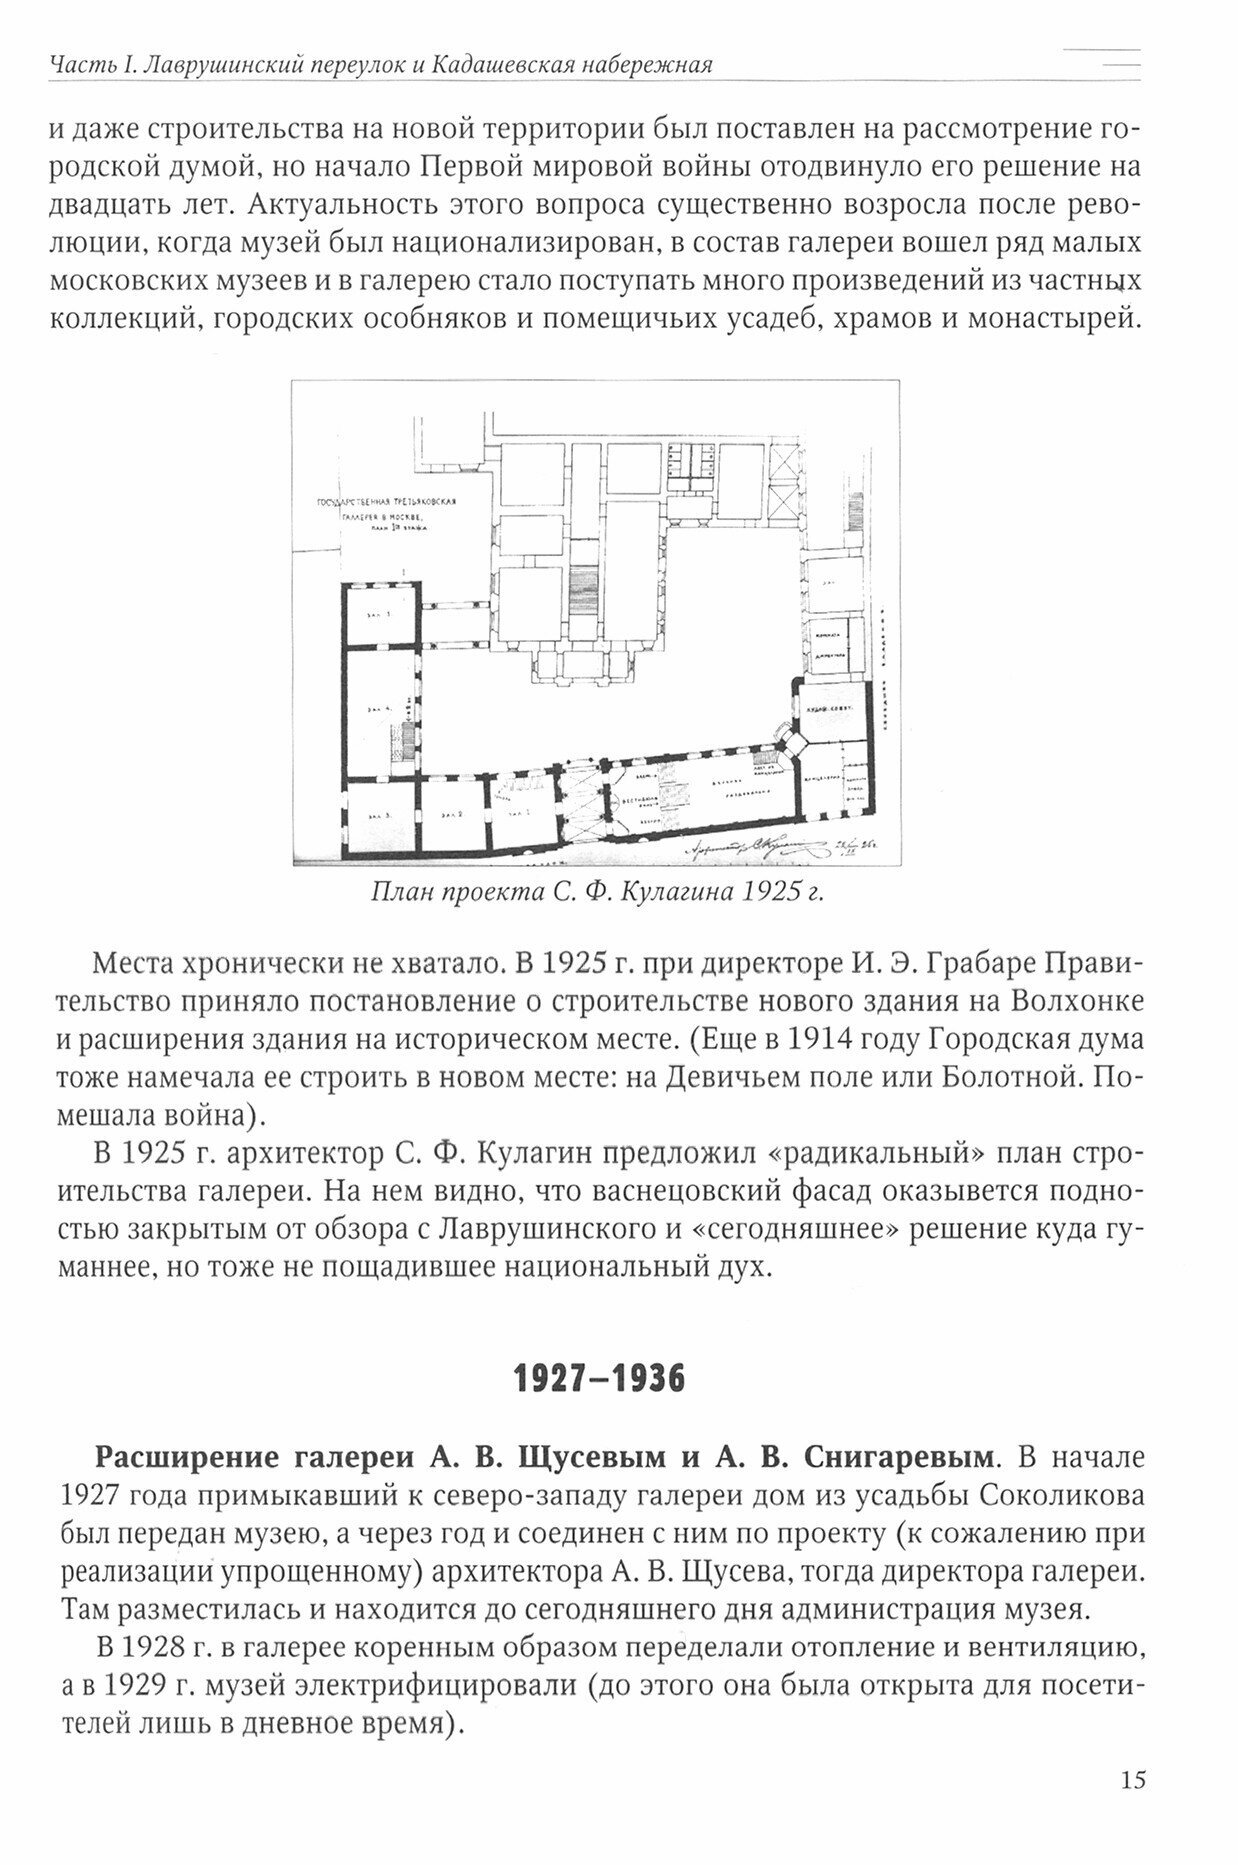 Третьяковская галерея: история строительства и реконструкции - фото №3